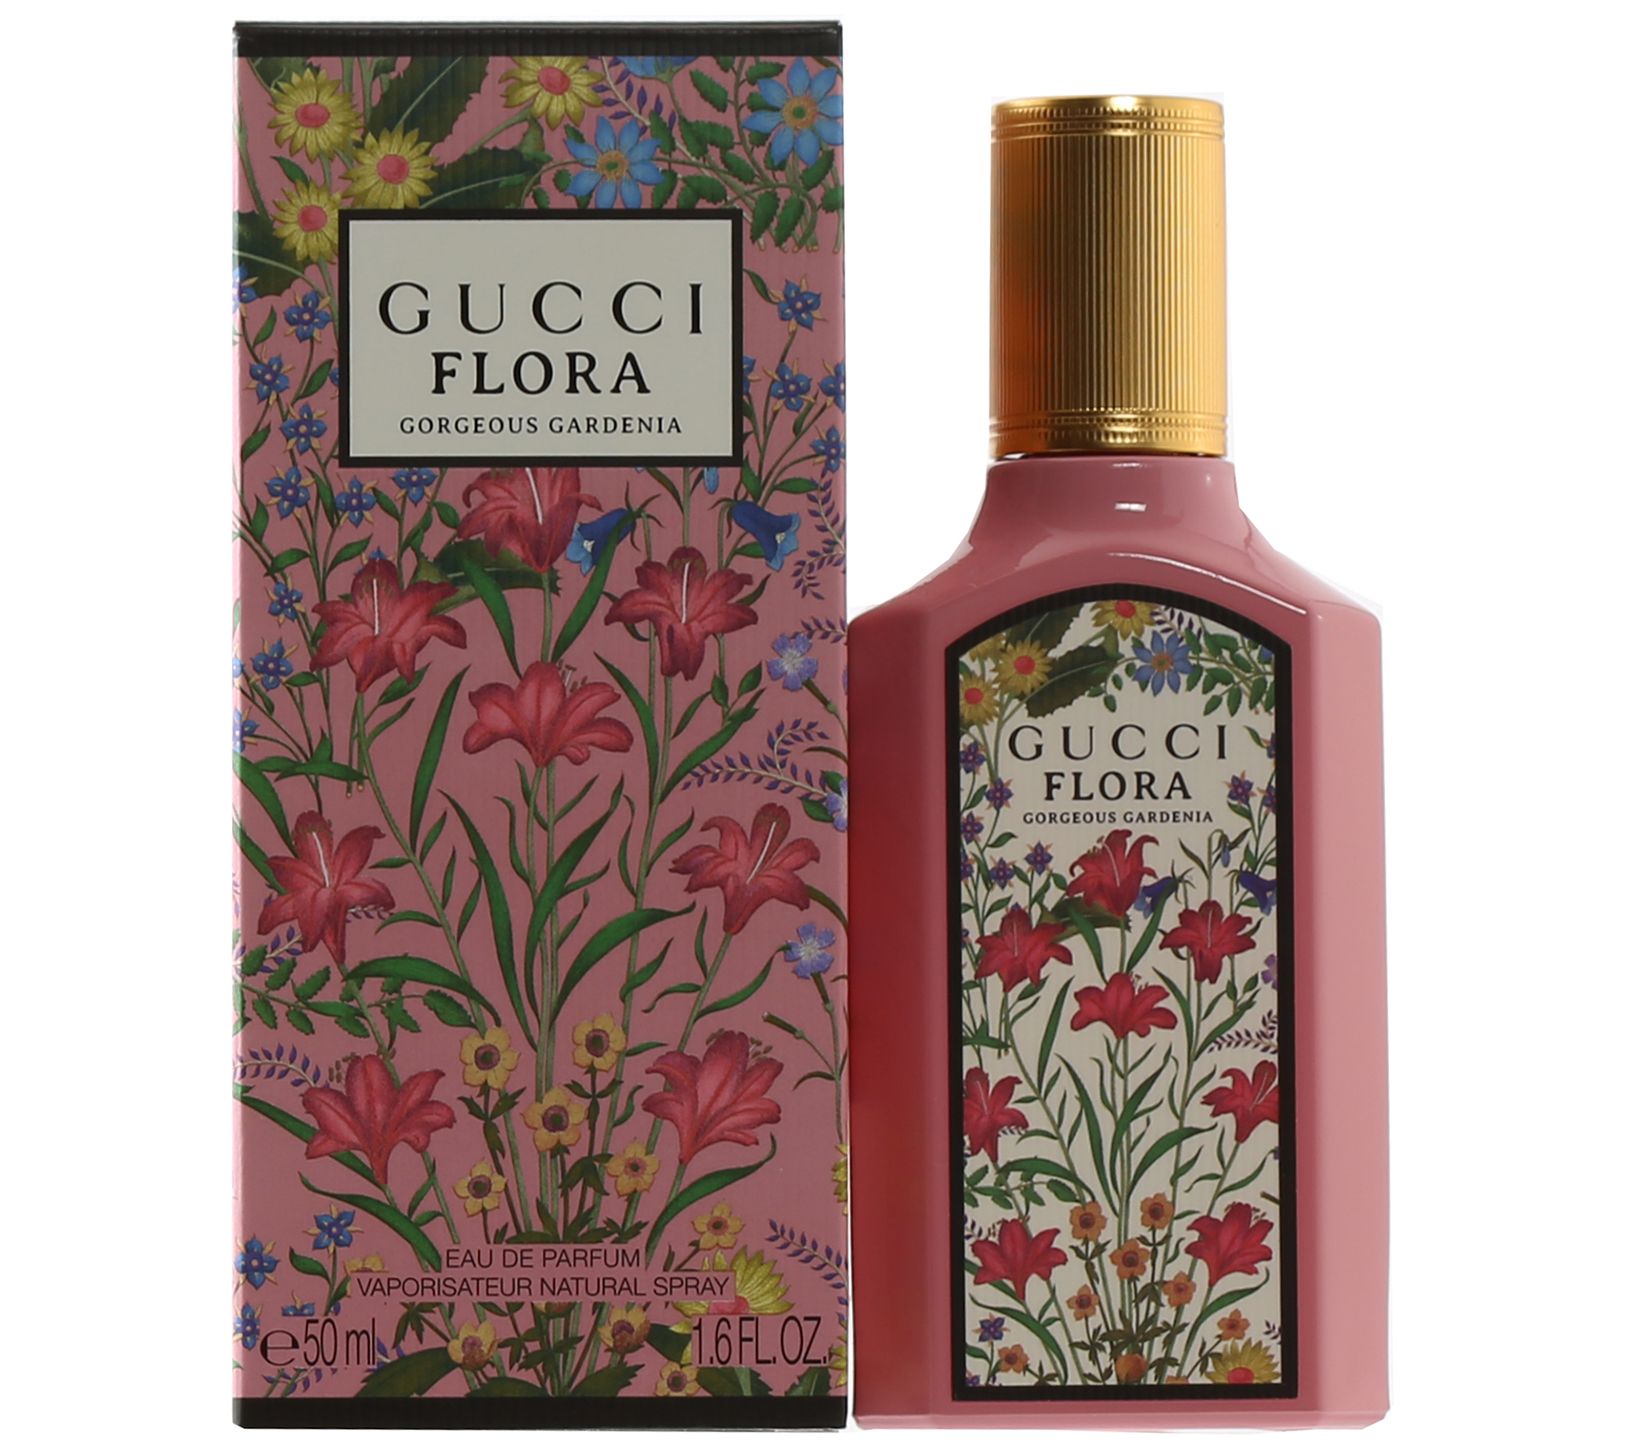 Gucci Flora Eau De Toilette, Perfume For Women, 2.5 Oz 